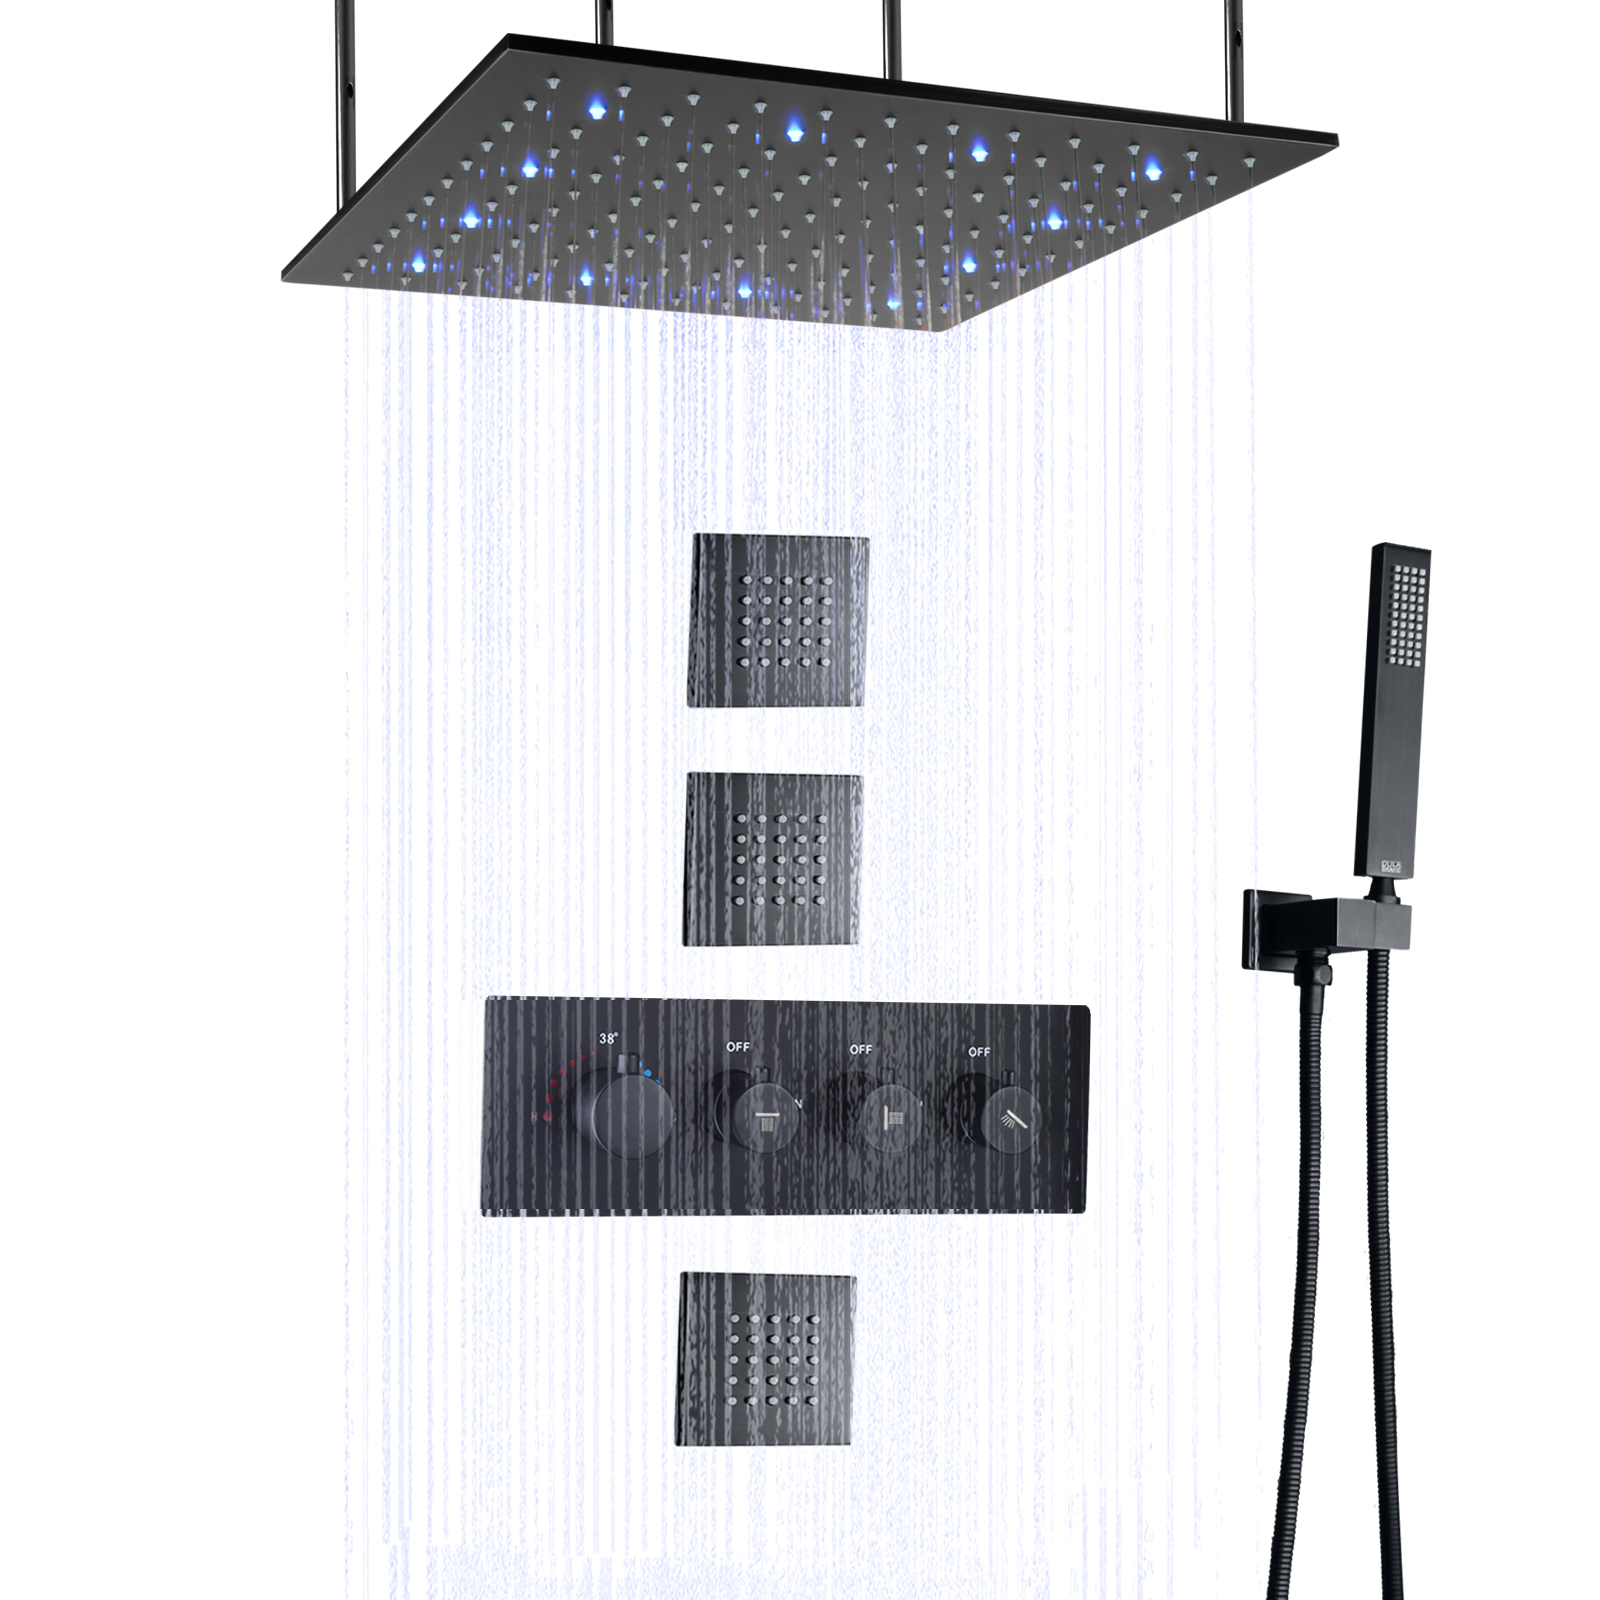 خلاط دش LED للحمام باللون الأسود غير اللامع مثبت على الحائط وتدليك الأمطار ولوحة دش محمولة باليد